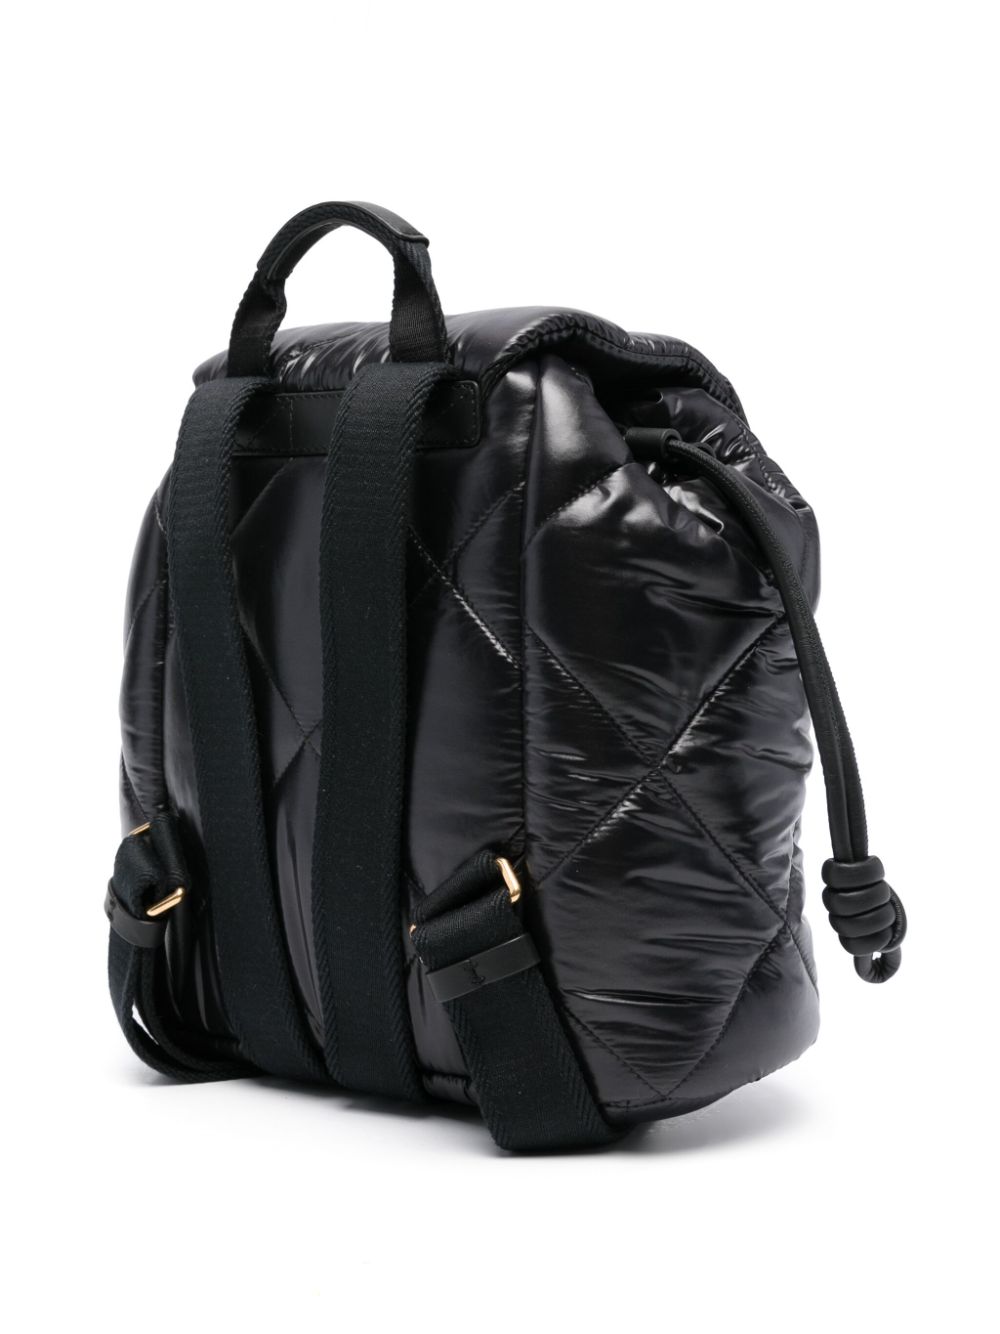 'Puf' backpack